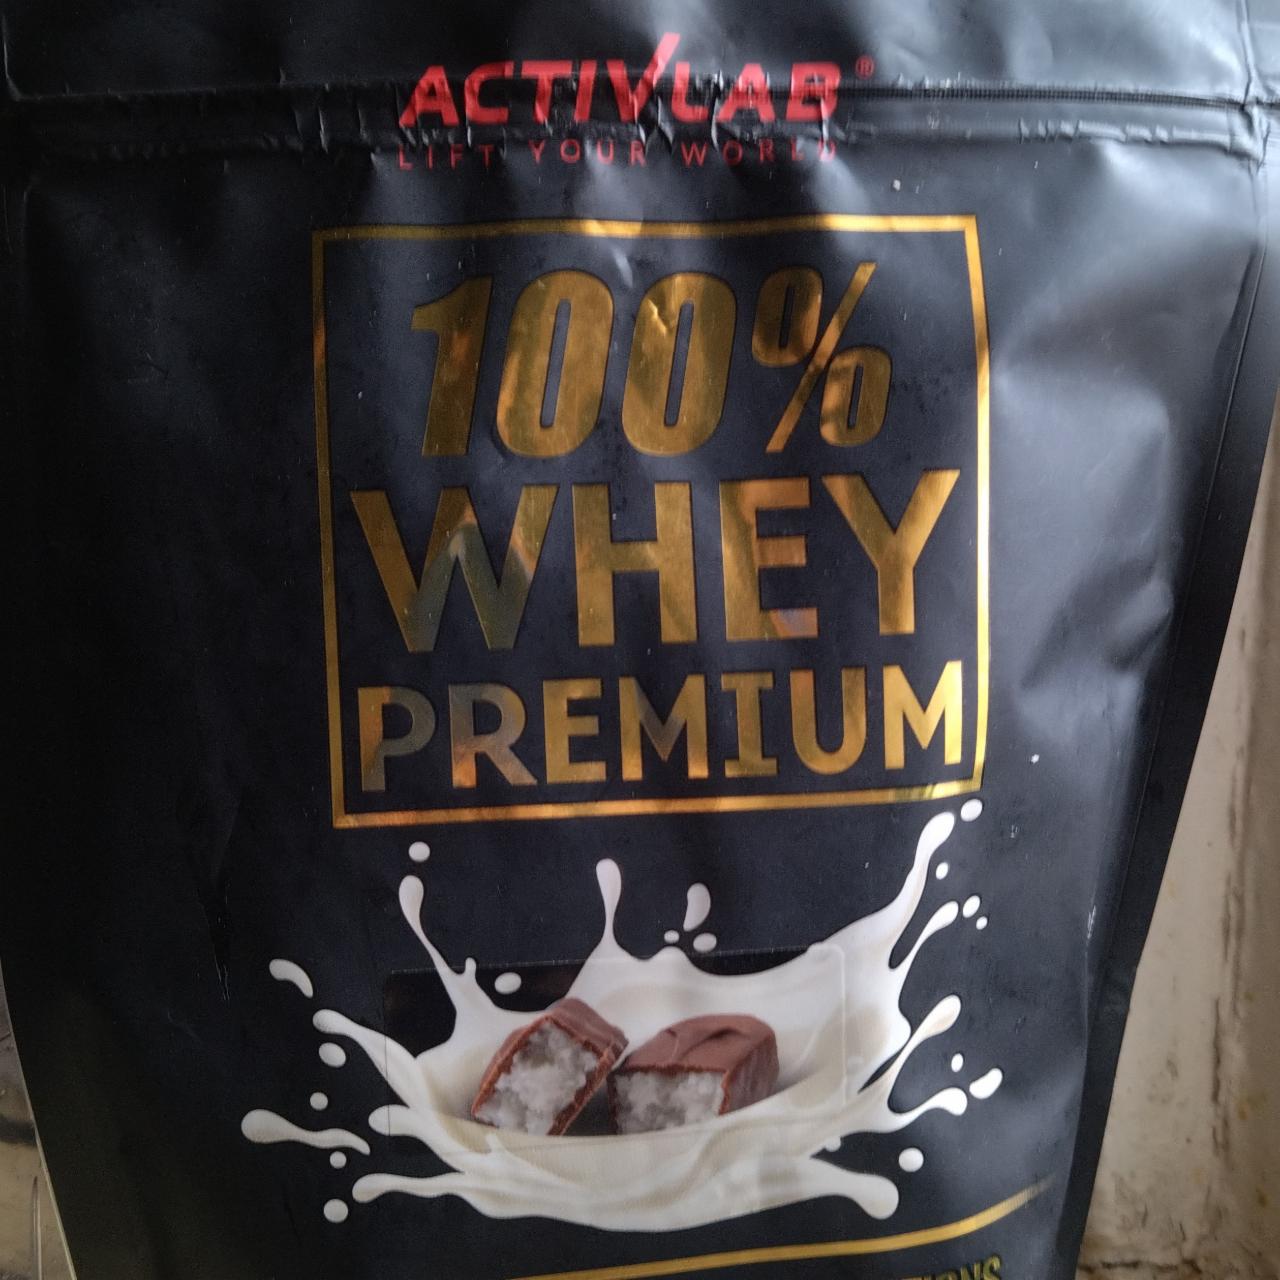 Zdjęcia - Activlab 100% whey premium czekolada kokos